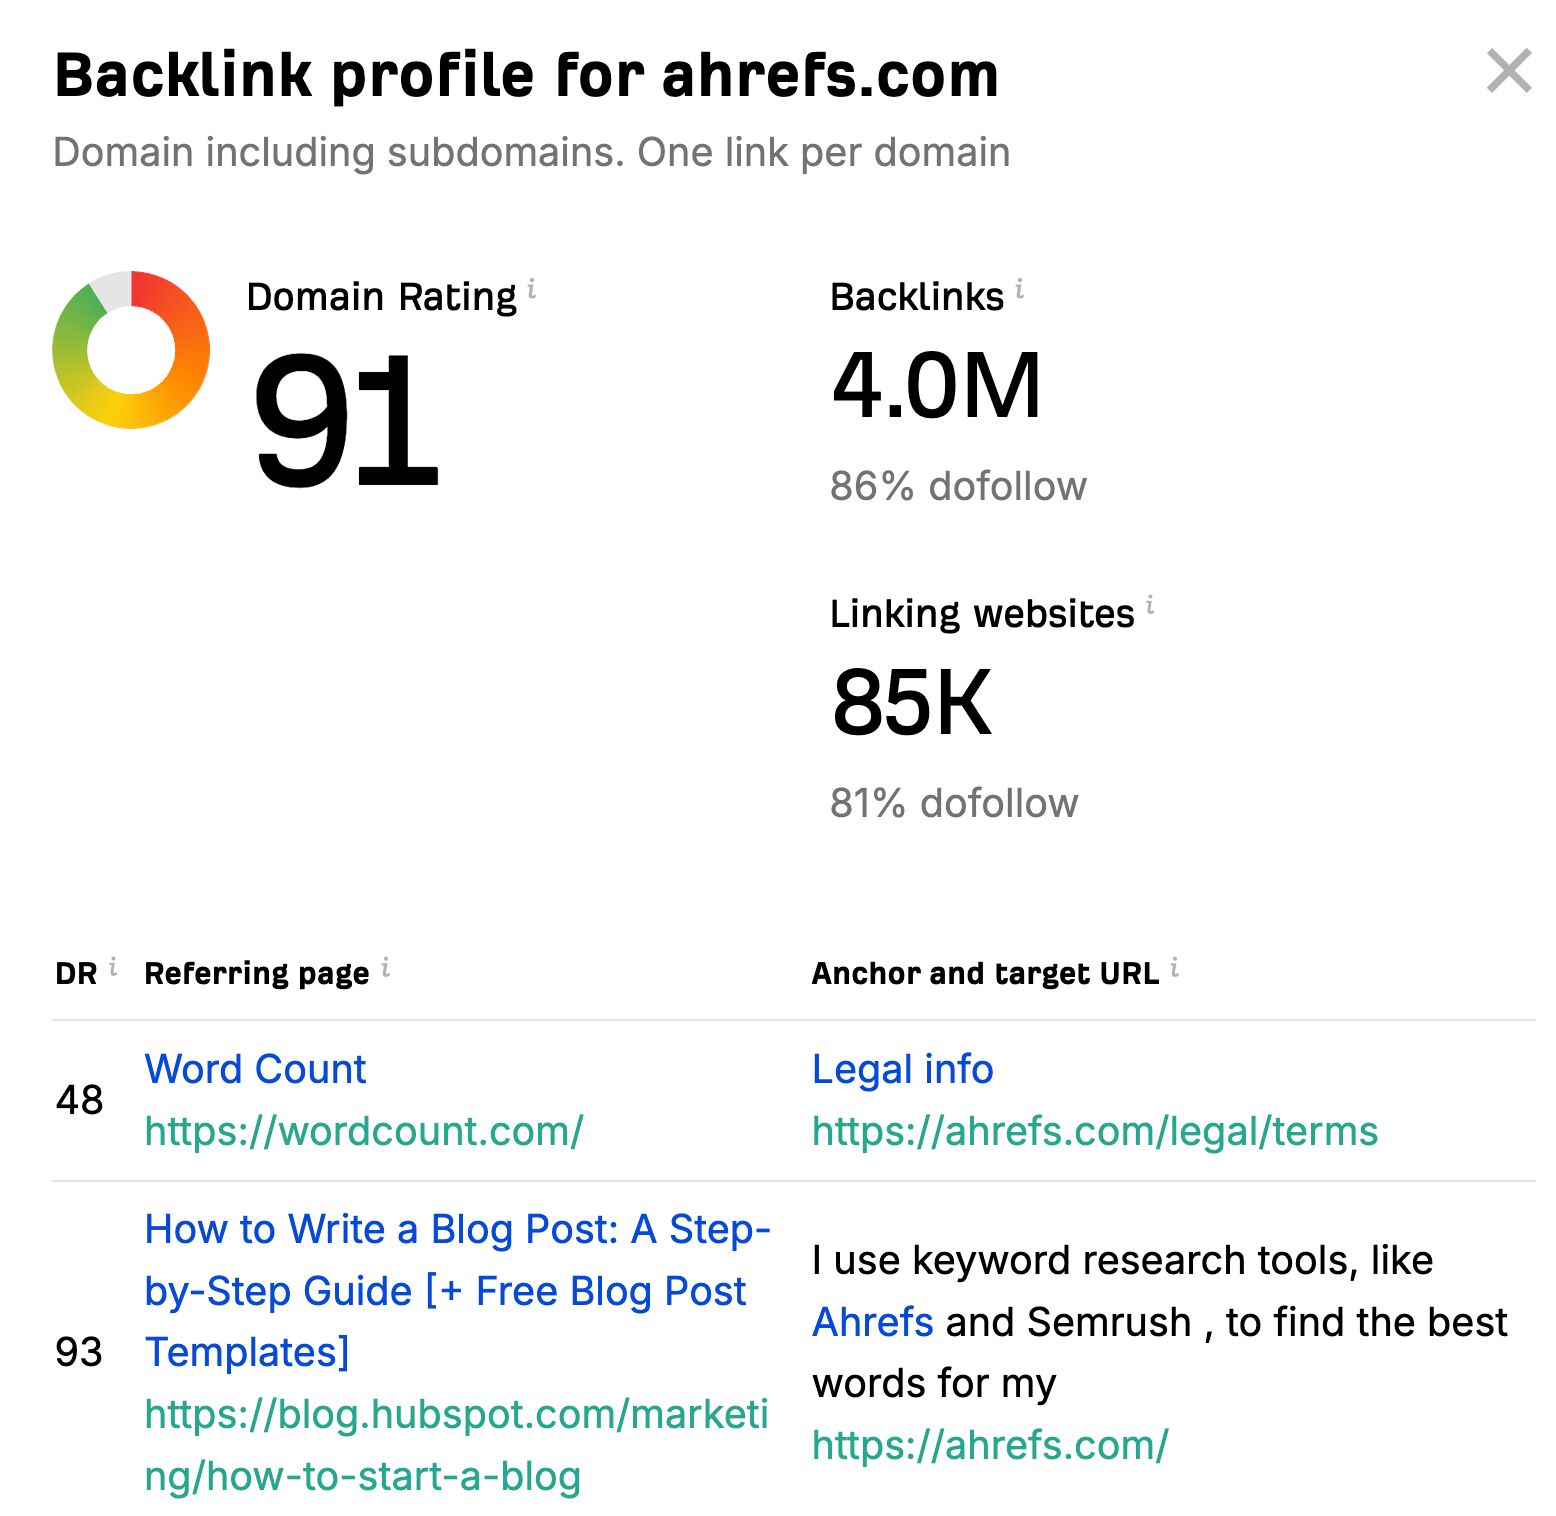 Backlink profile for ahrefs.com